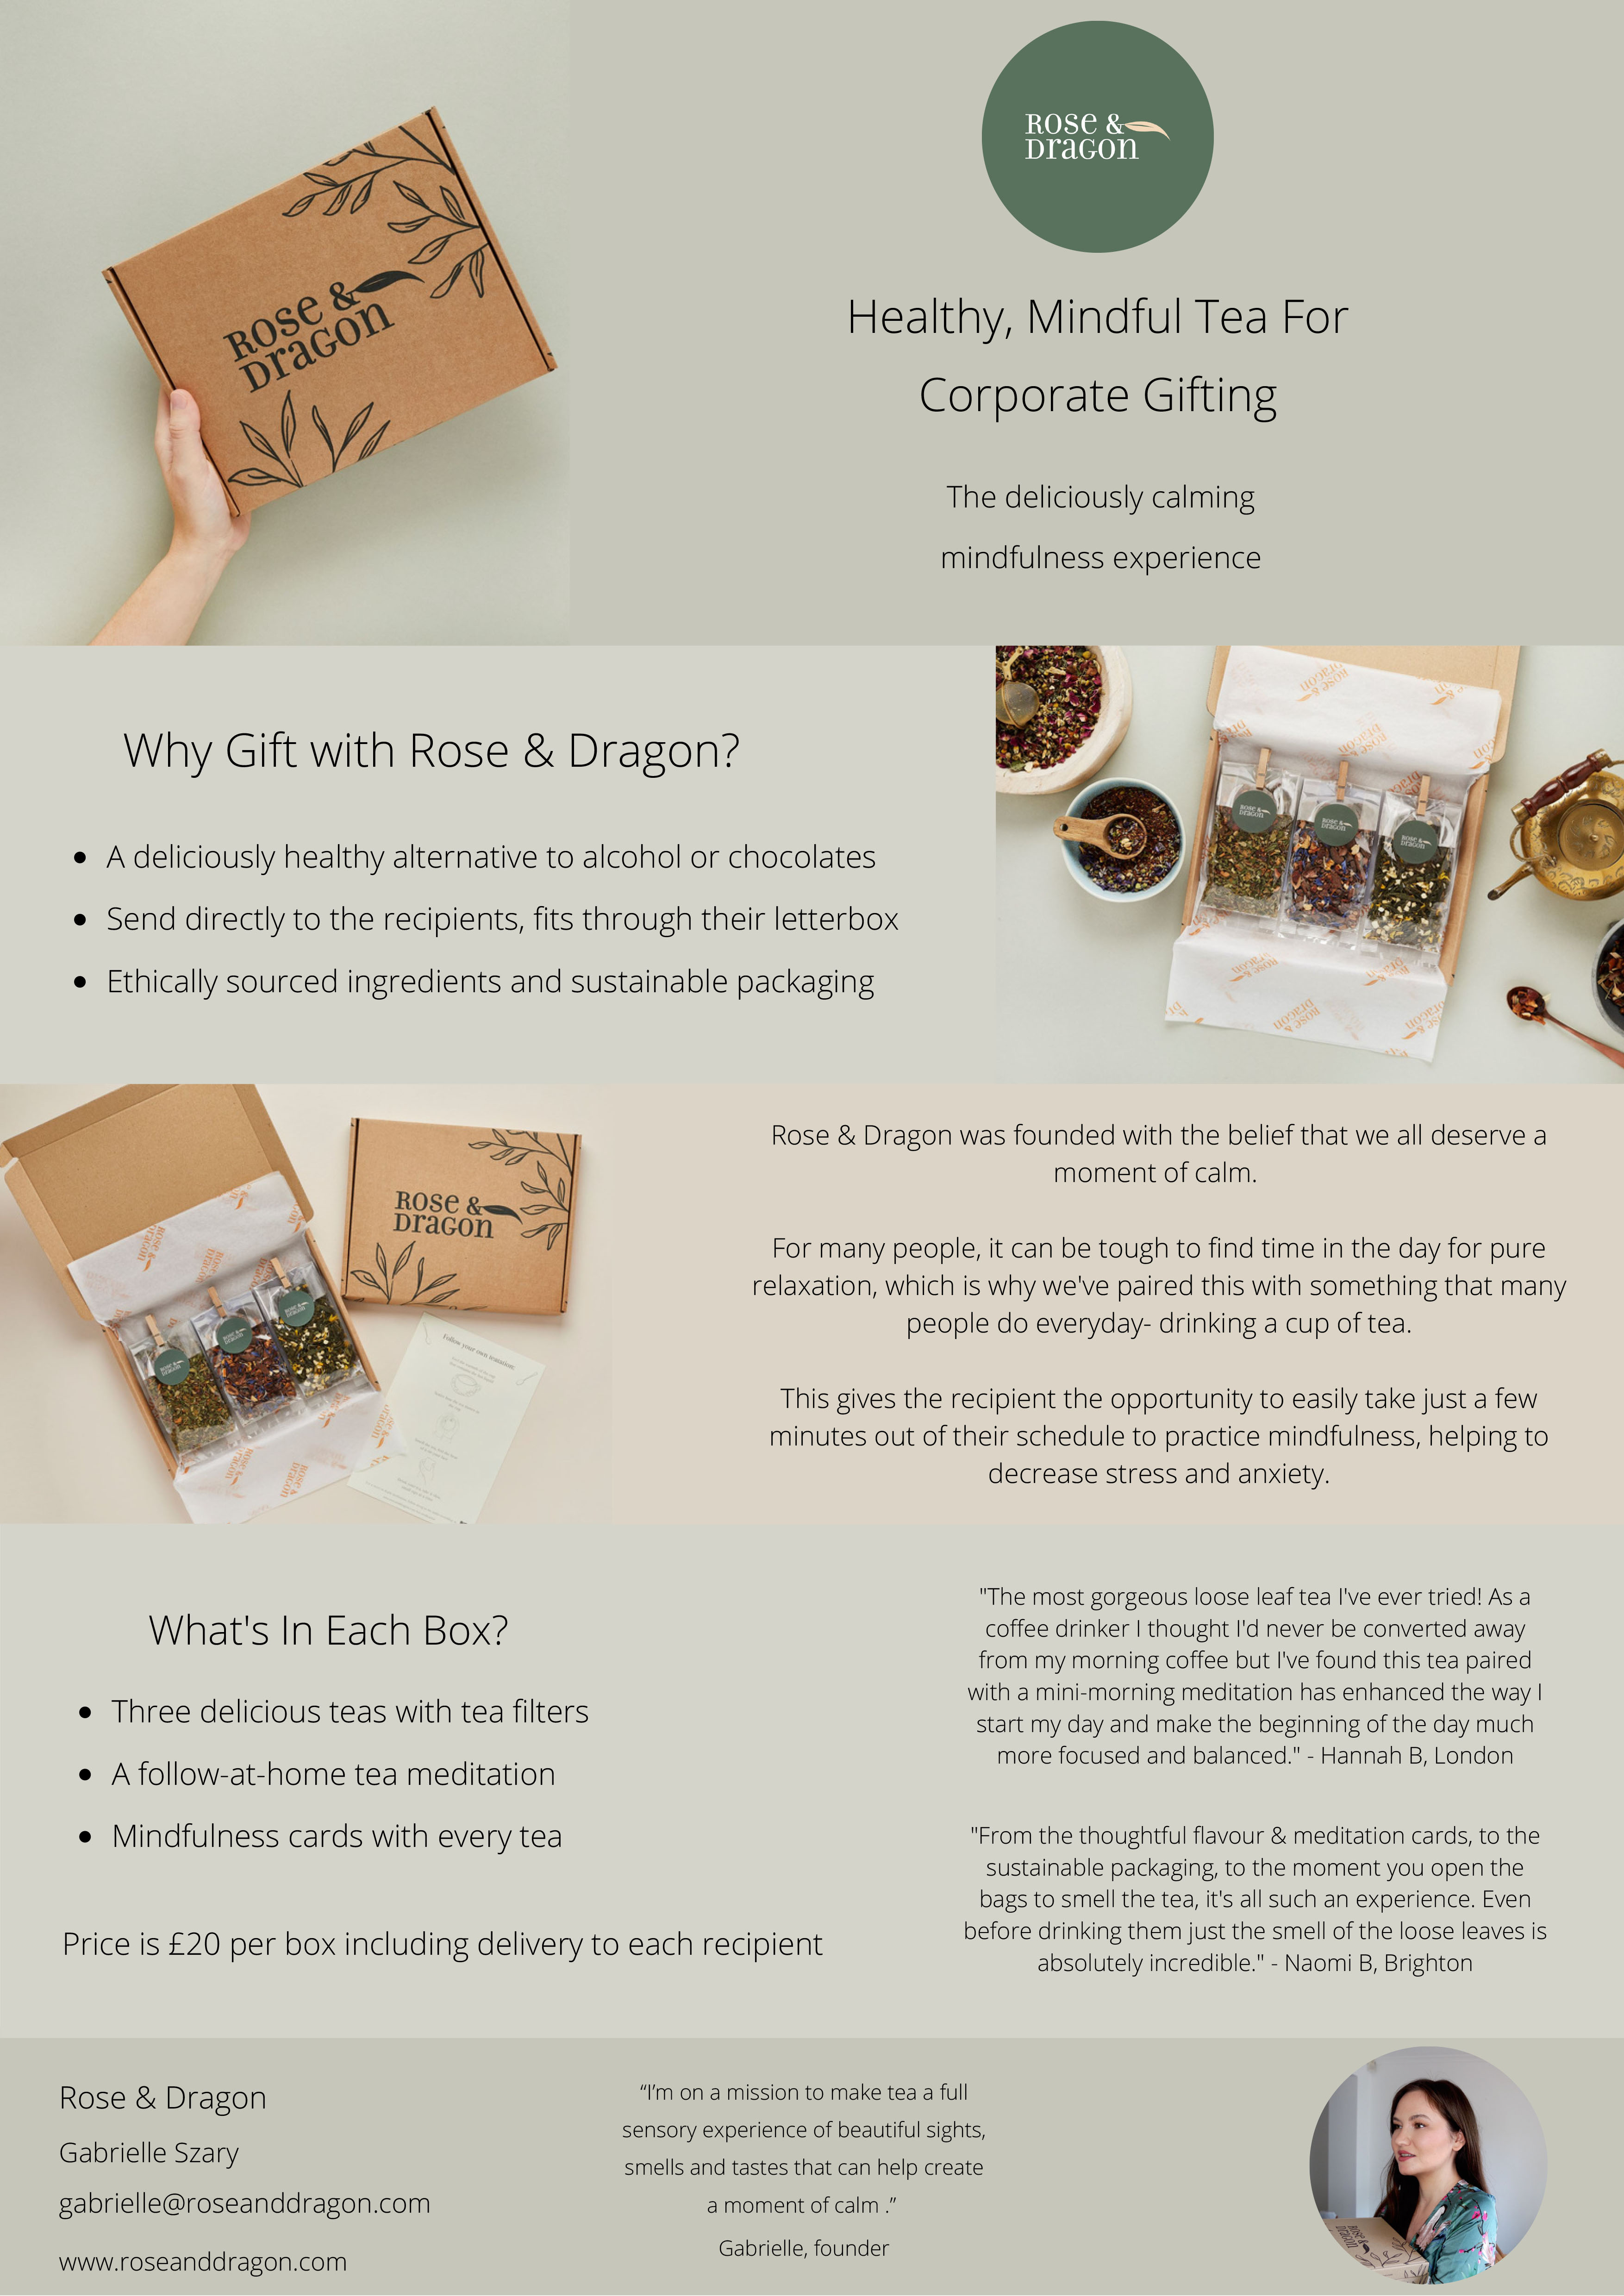 439-rose-dragon-tea---corporate-gifting.jpg